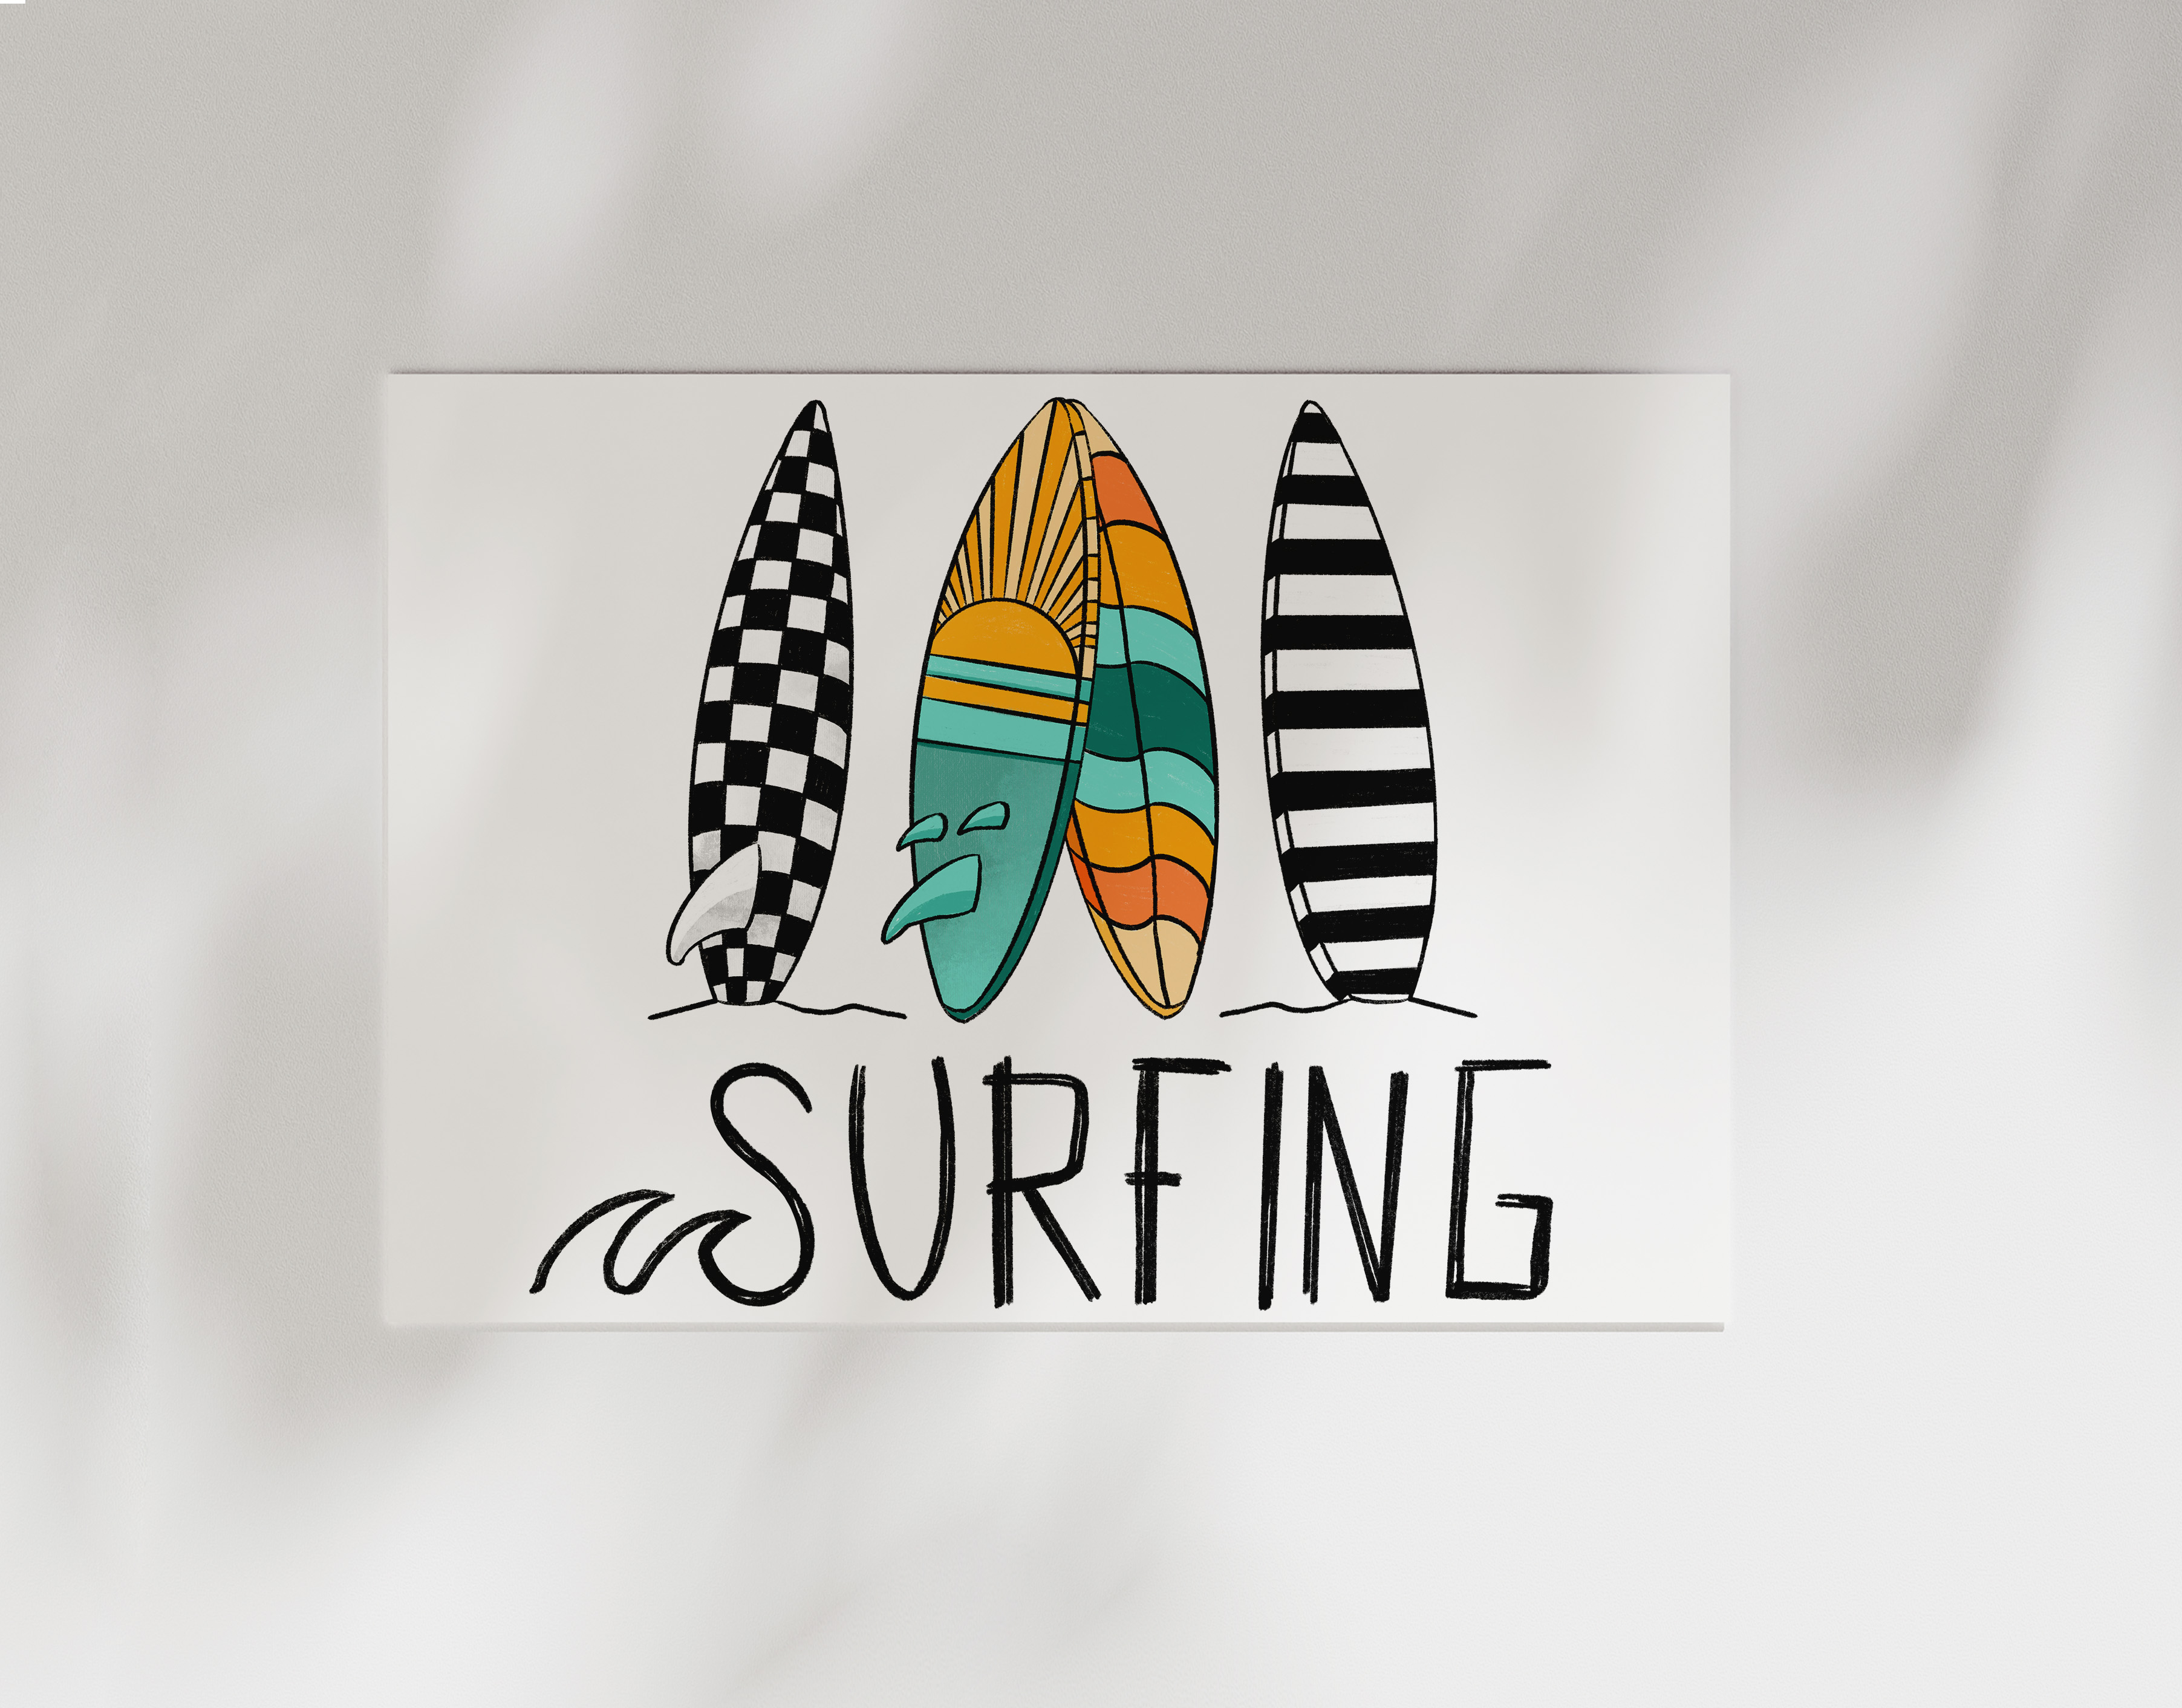 Bügelbild Surfing Surfen Kollektion Sports ca. 23x20,5 cm BxH